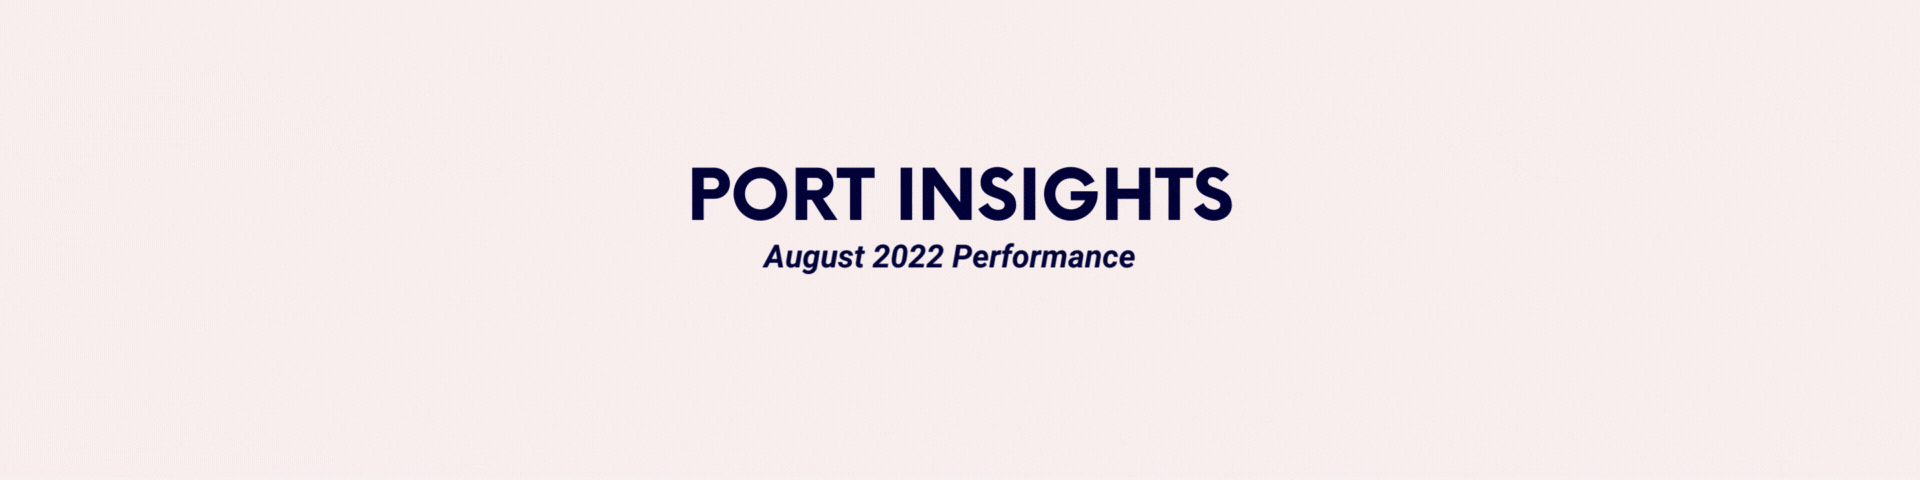 port insights header